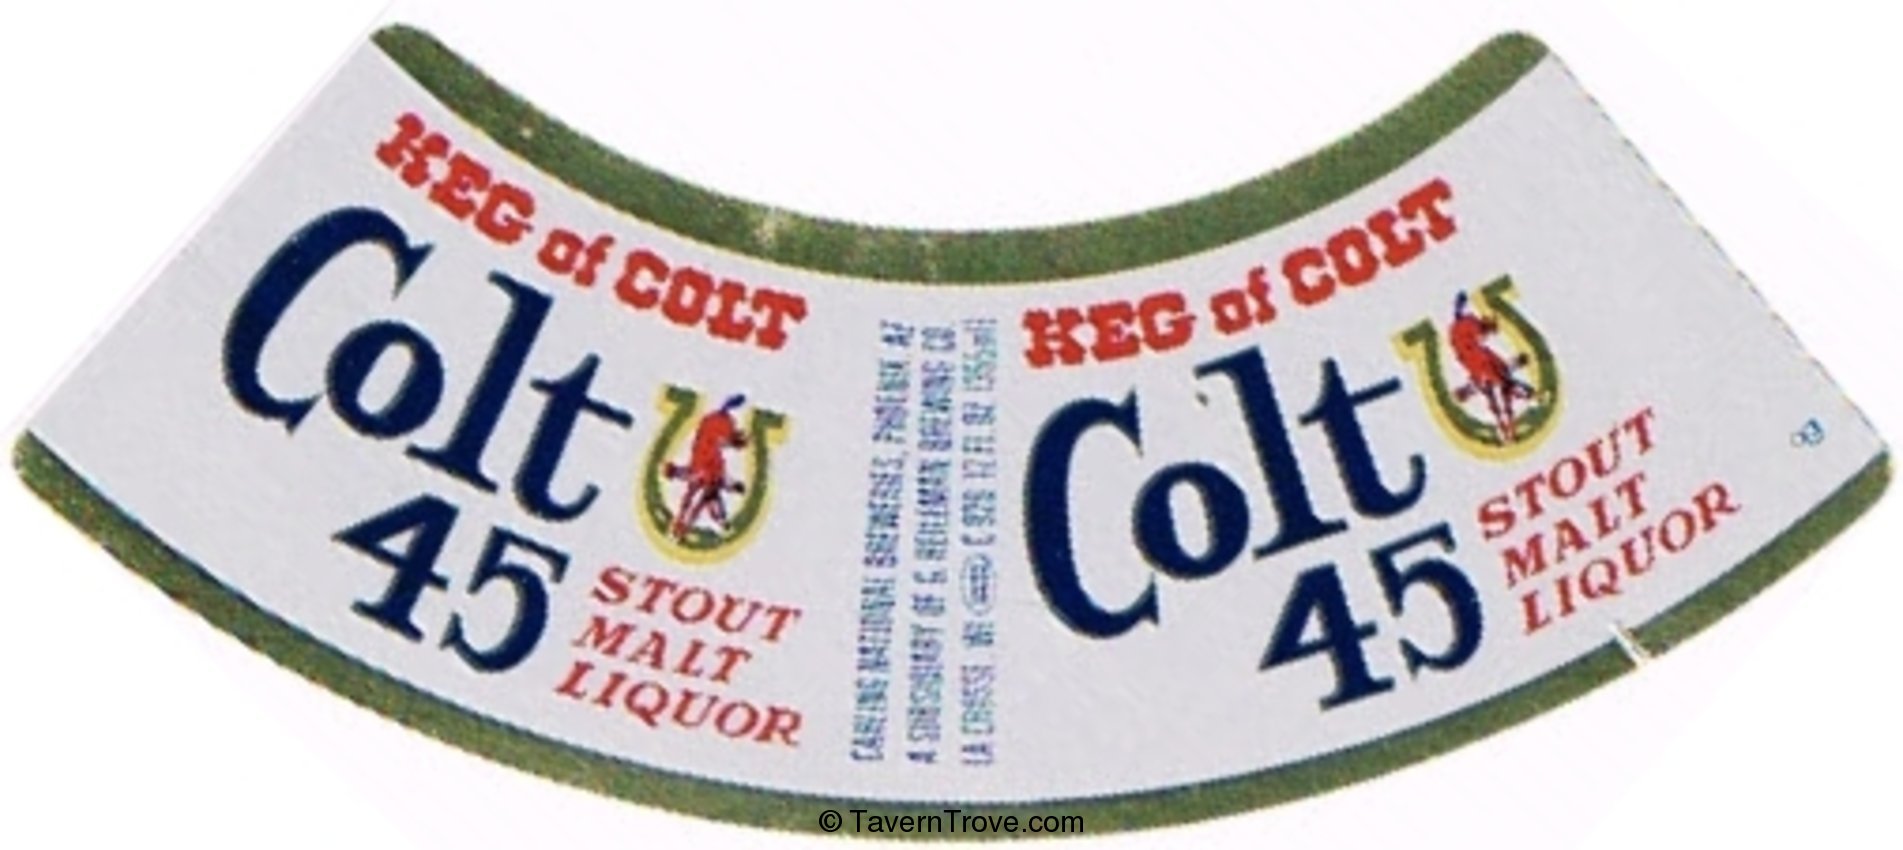 Colt 45 Stout Malt Liquor